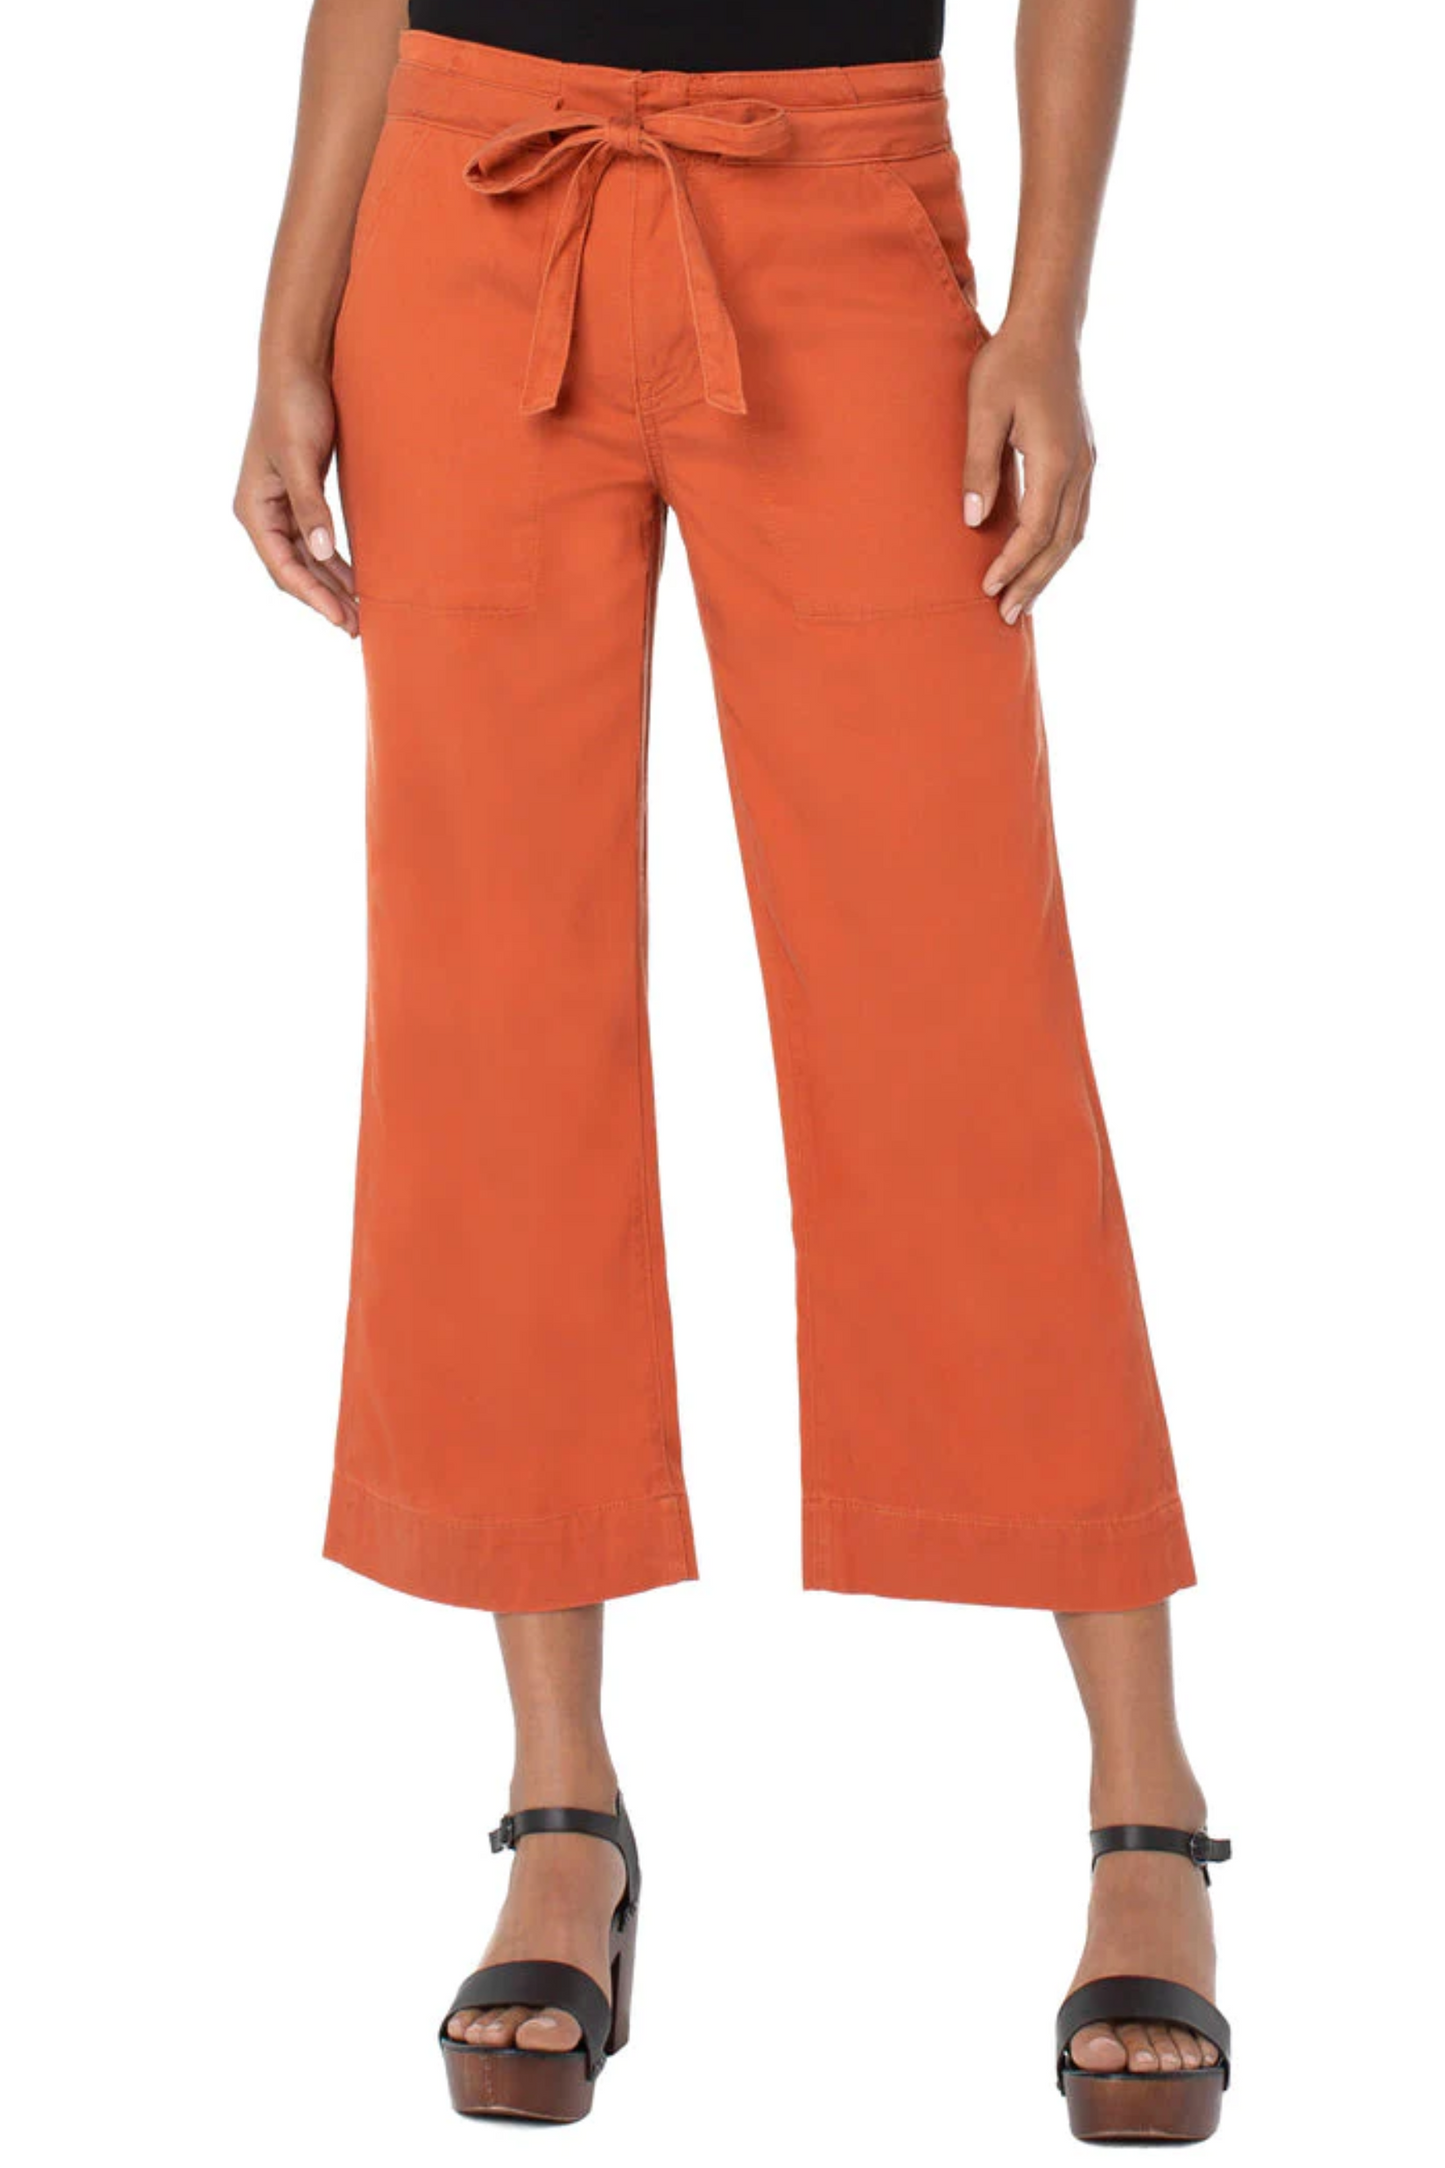 Encased Self Tie Pants Orange Rust